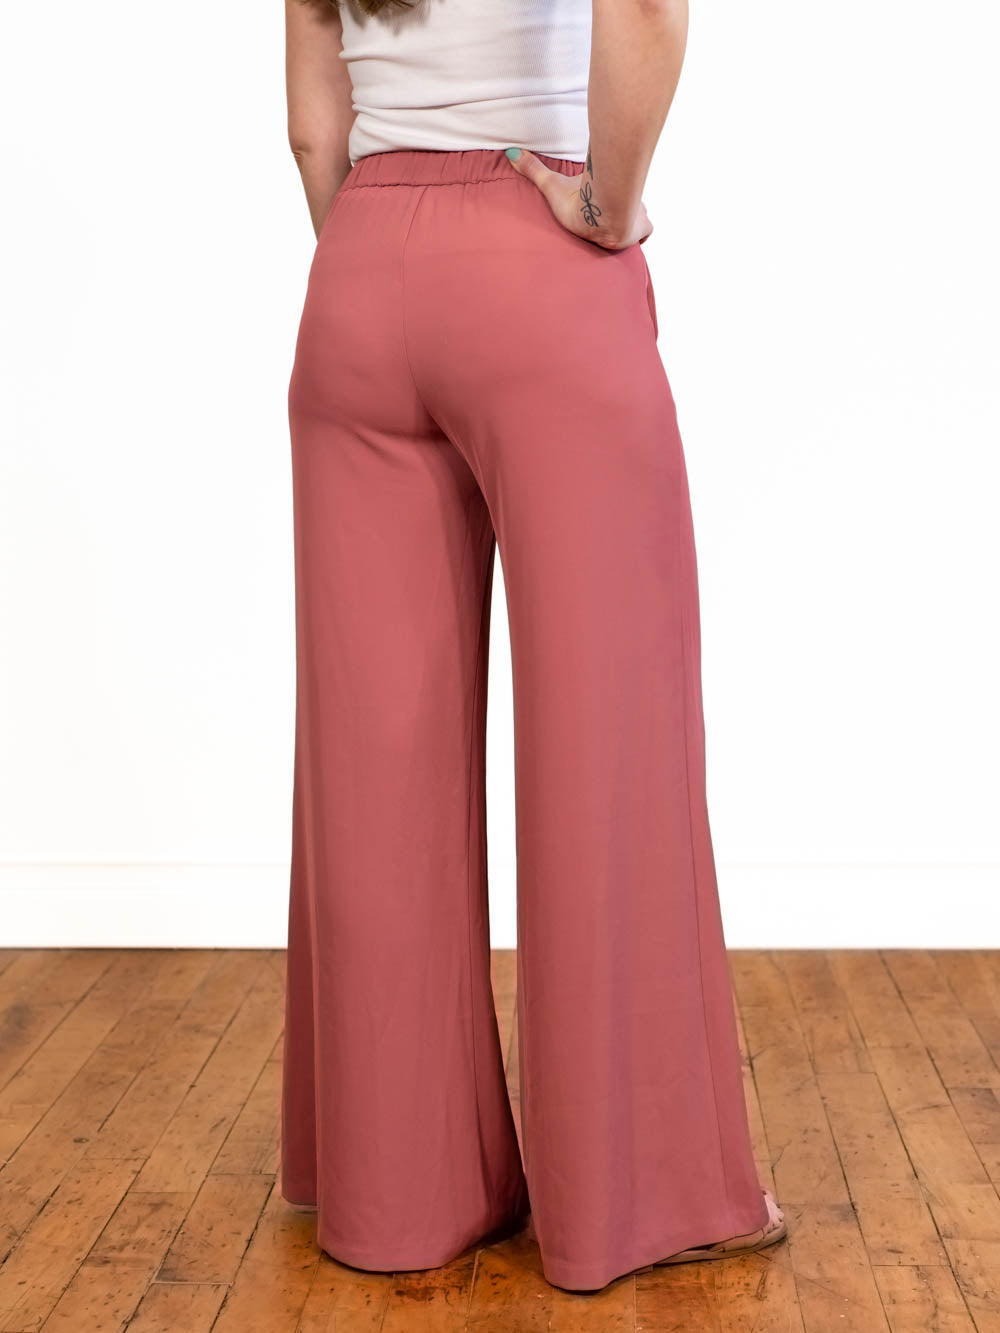 Riviera Tall Pant  Long Inseam Pants for Tall Women - Amalli Talli